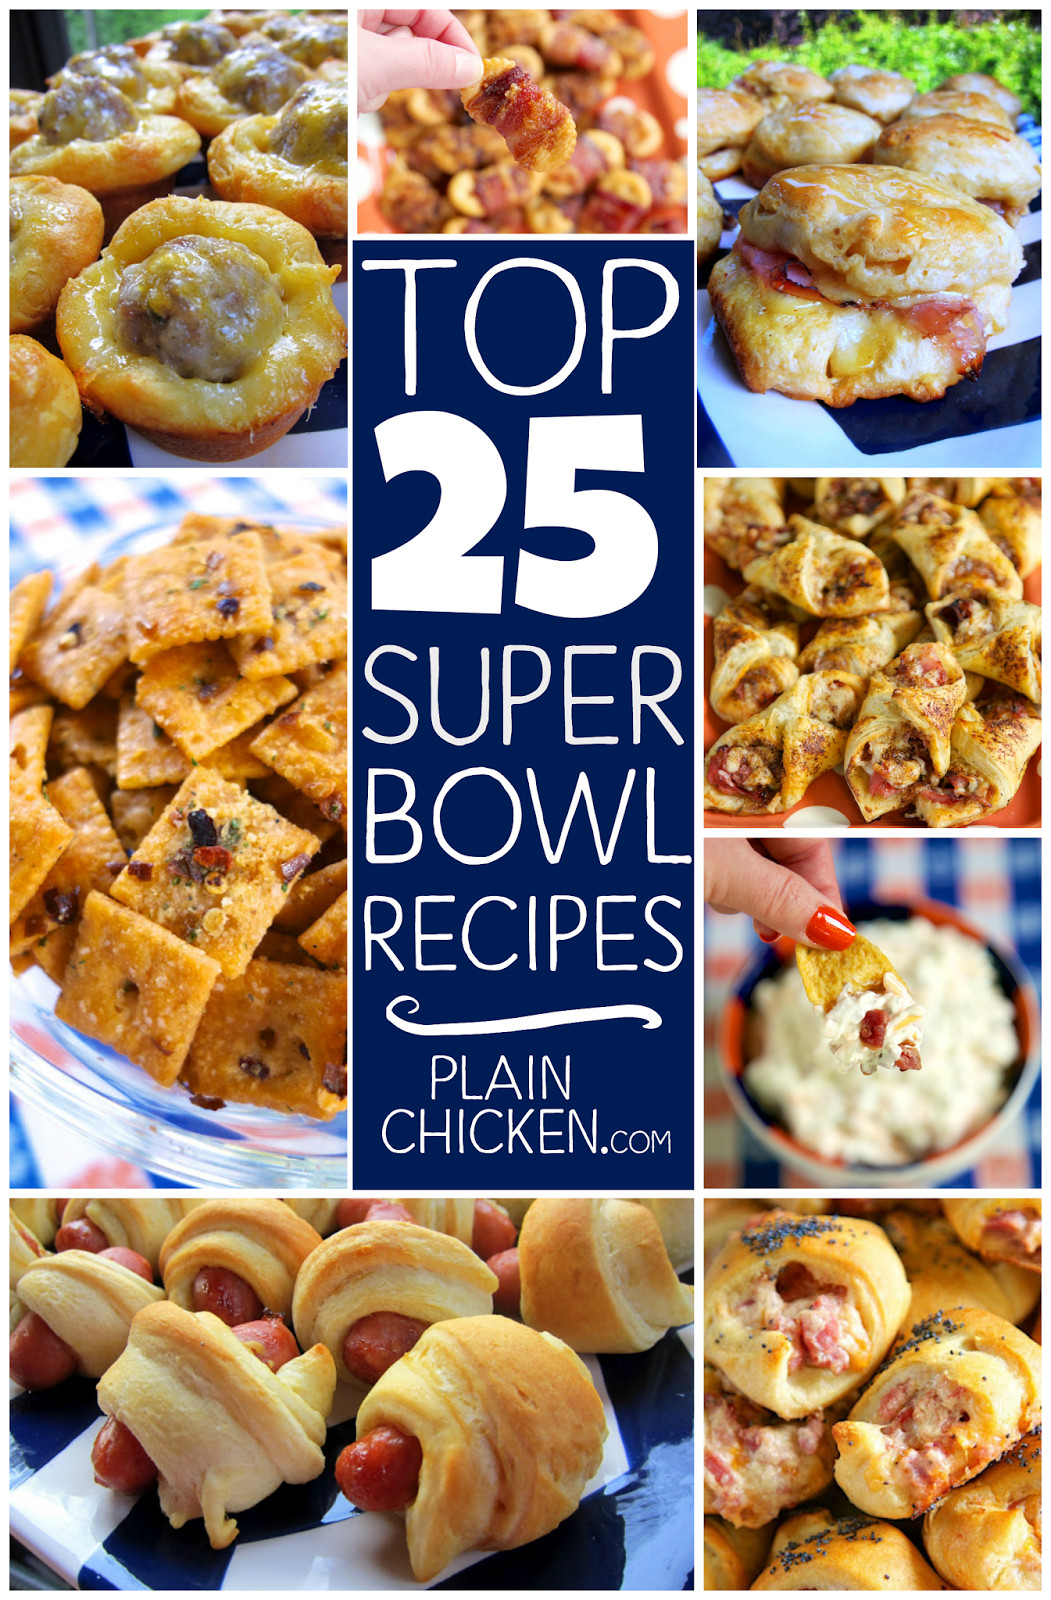 Super Bowl Dishes Recipes
 Top 25 Super Bowl Recipes